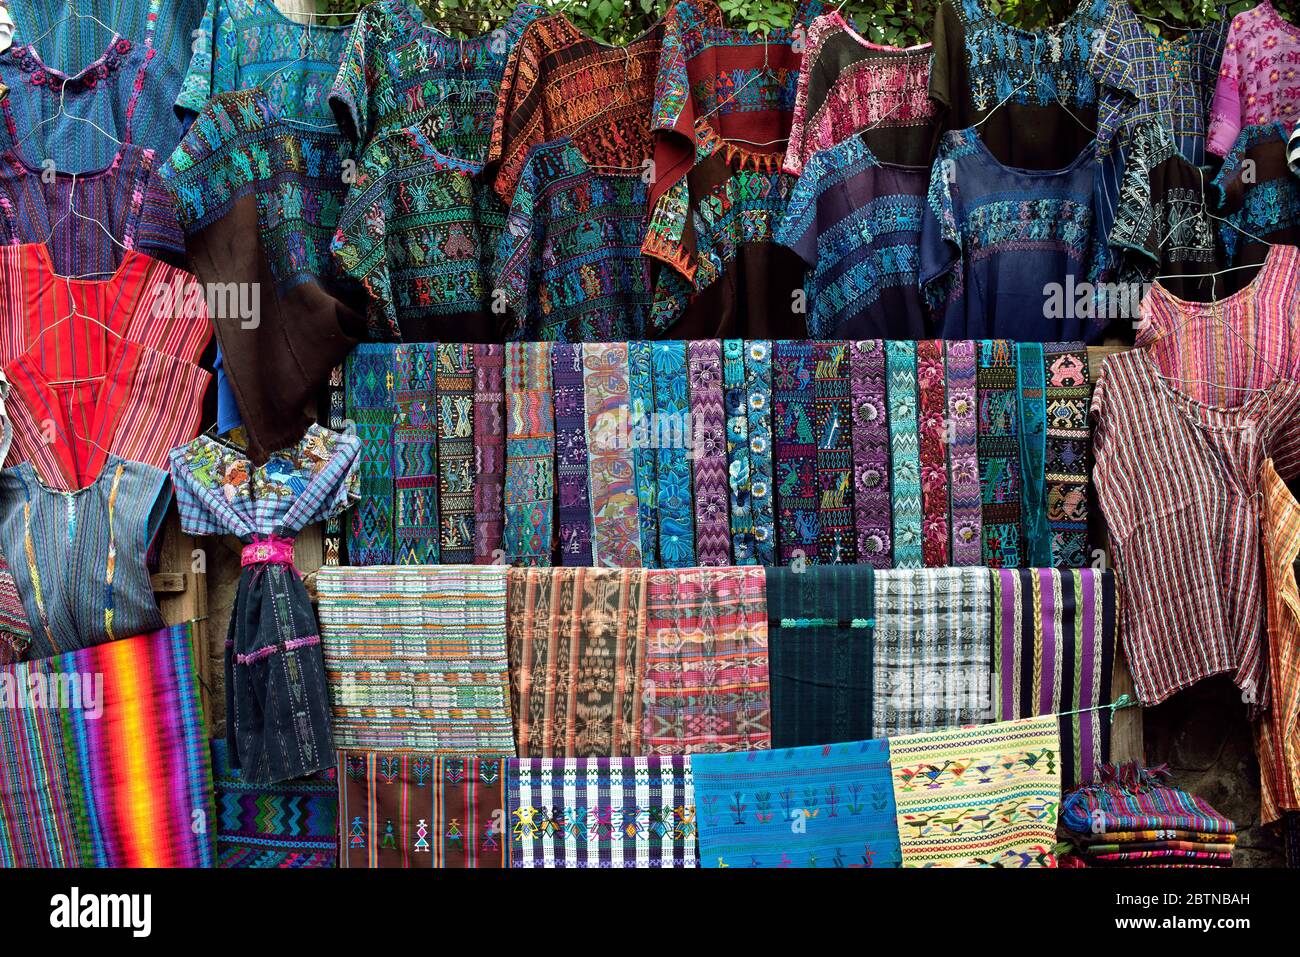 Vente de tissus guatémaltèques aux couleurs vives (blouse), faja (ceinture) et de tissus guatémaltèques multicolores. Santa Catarina Palopó, Lac Atitlán, Guatemala Banque D'Images